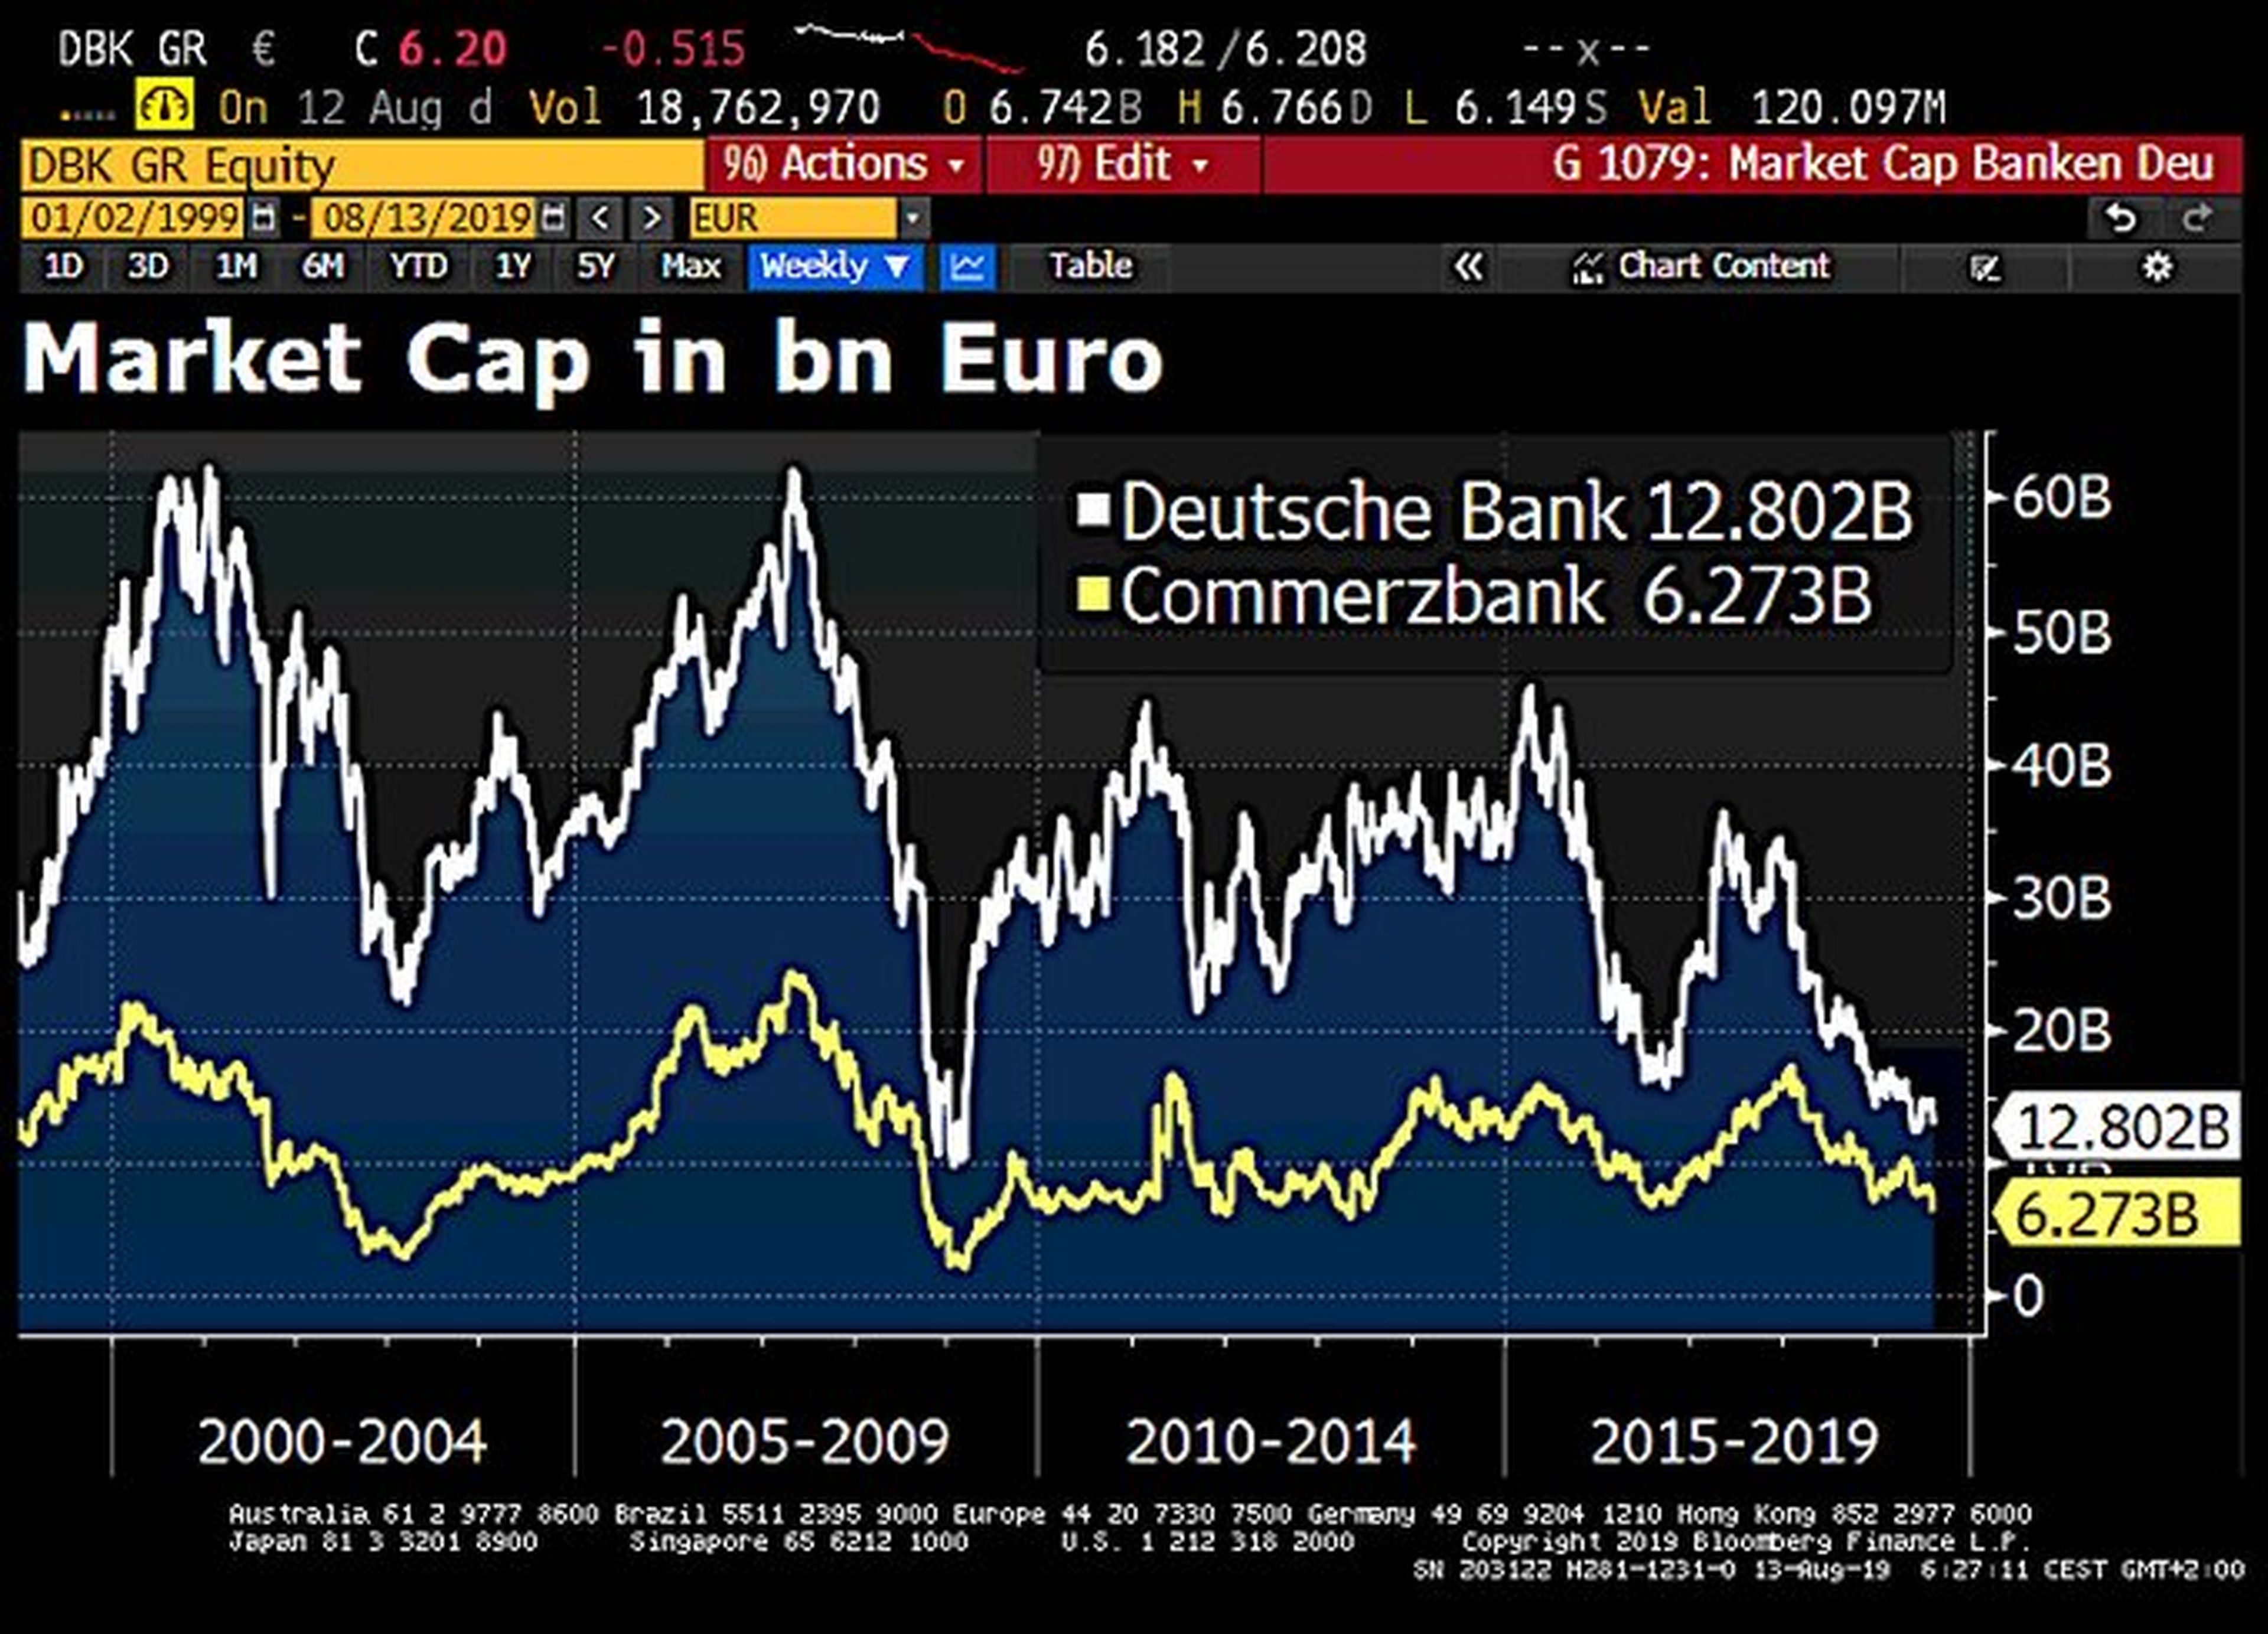 Capitalización bursátil de Deutsche Bank y Commerzbank